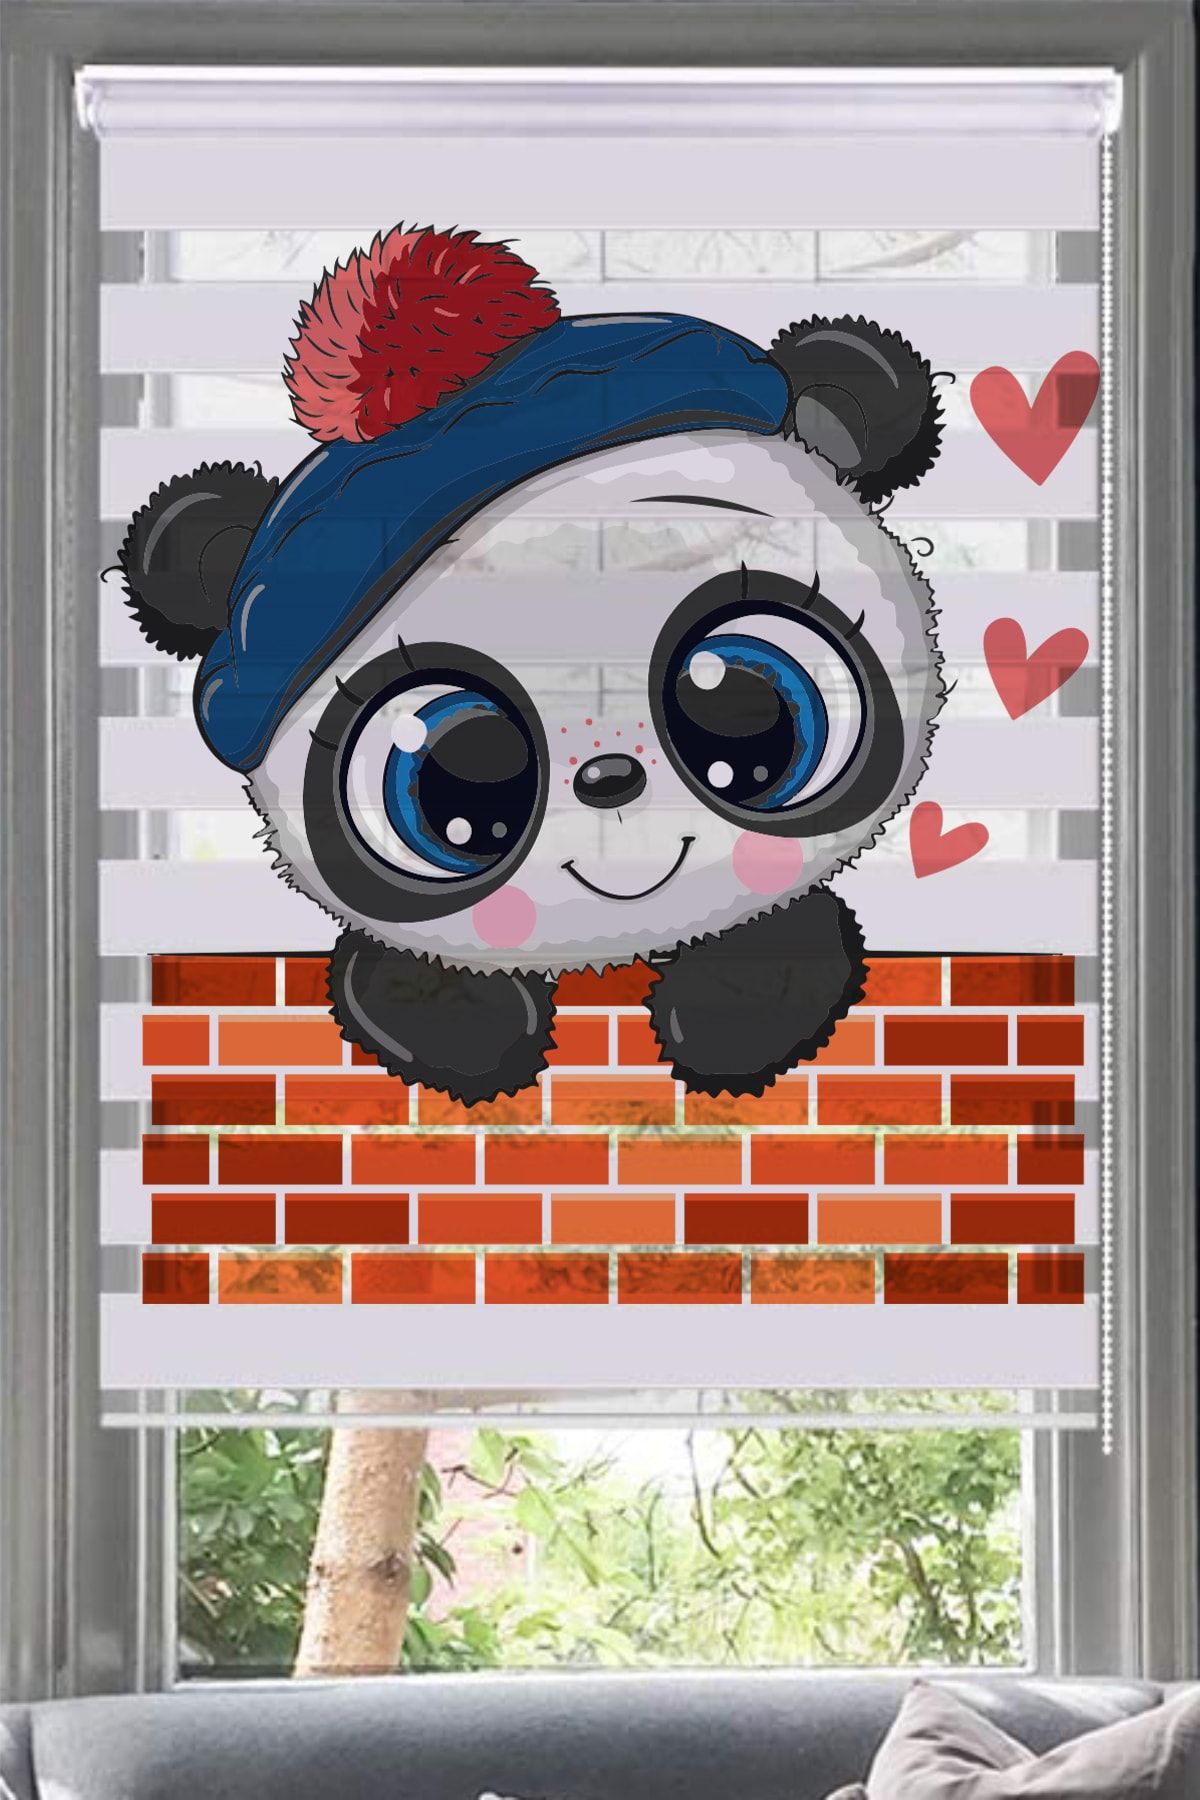 Lotus Duvardan Bakan Panda Baskılı Zebra Perde - Çocuk Odası - Bebek Odası - 114